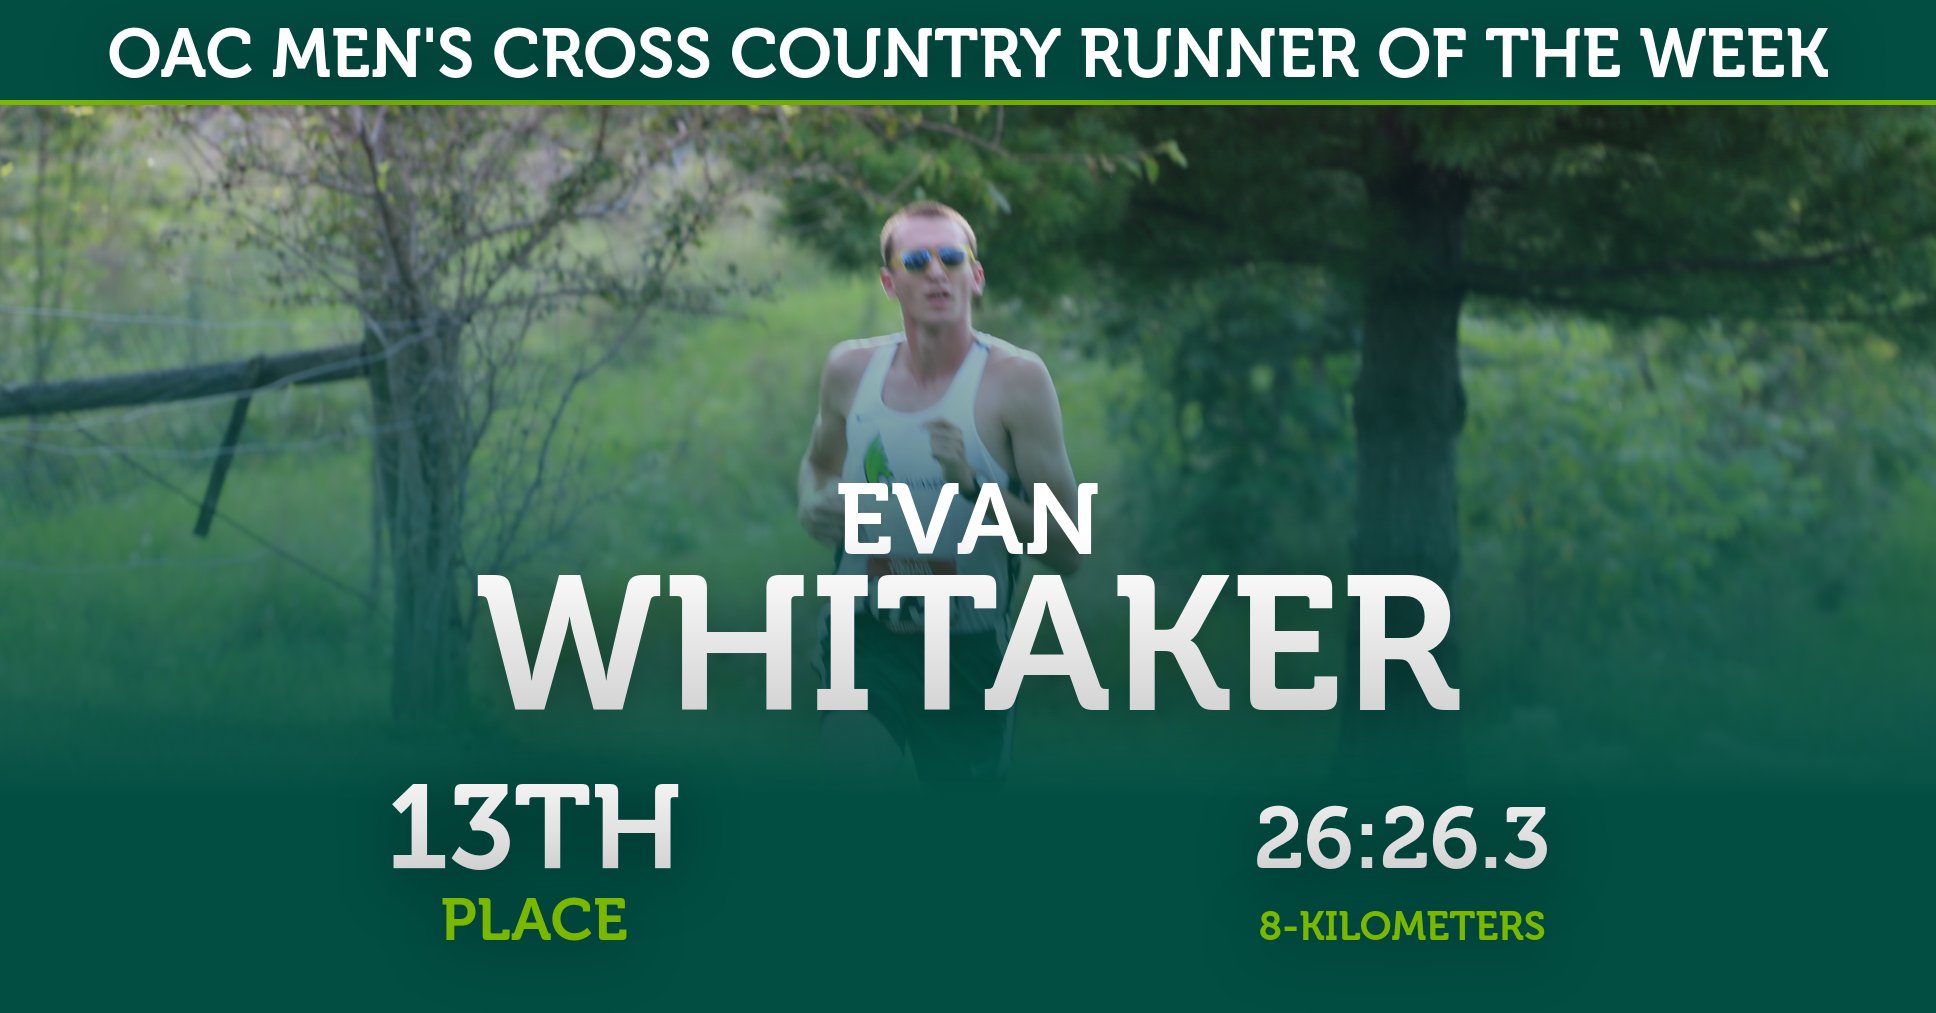 Evan Whitaker Named OAC Men's Cross Country Runner of the Week